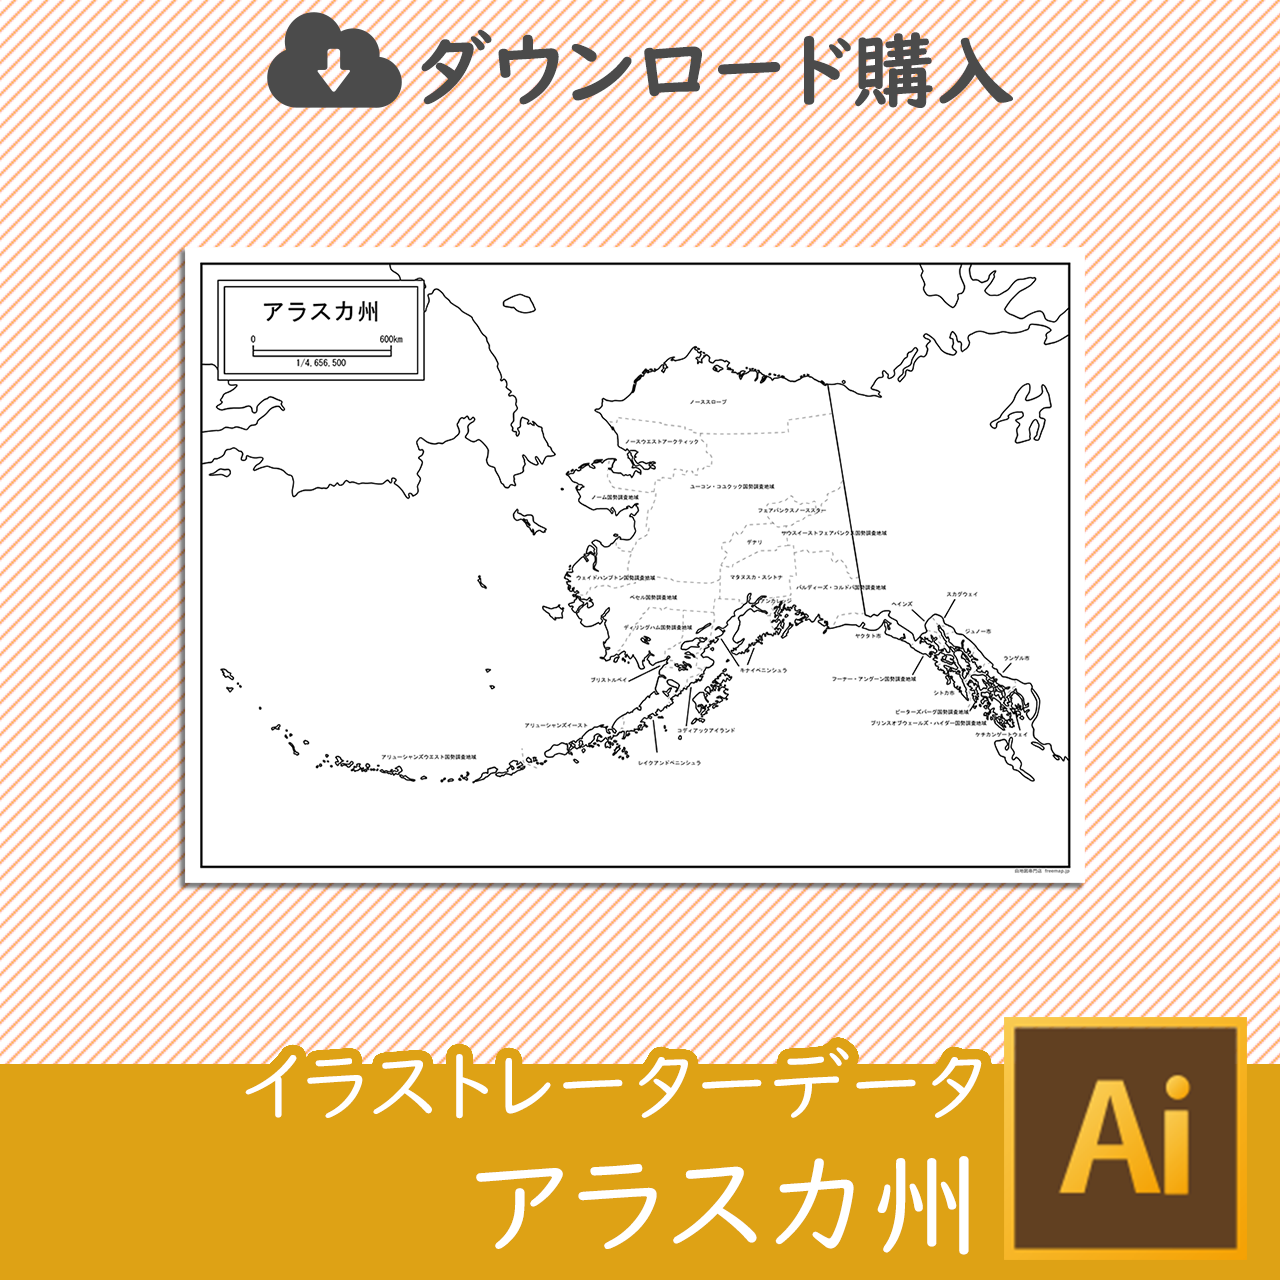 アラスカ州の地図のサムネイル